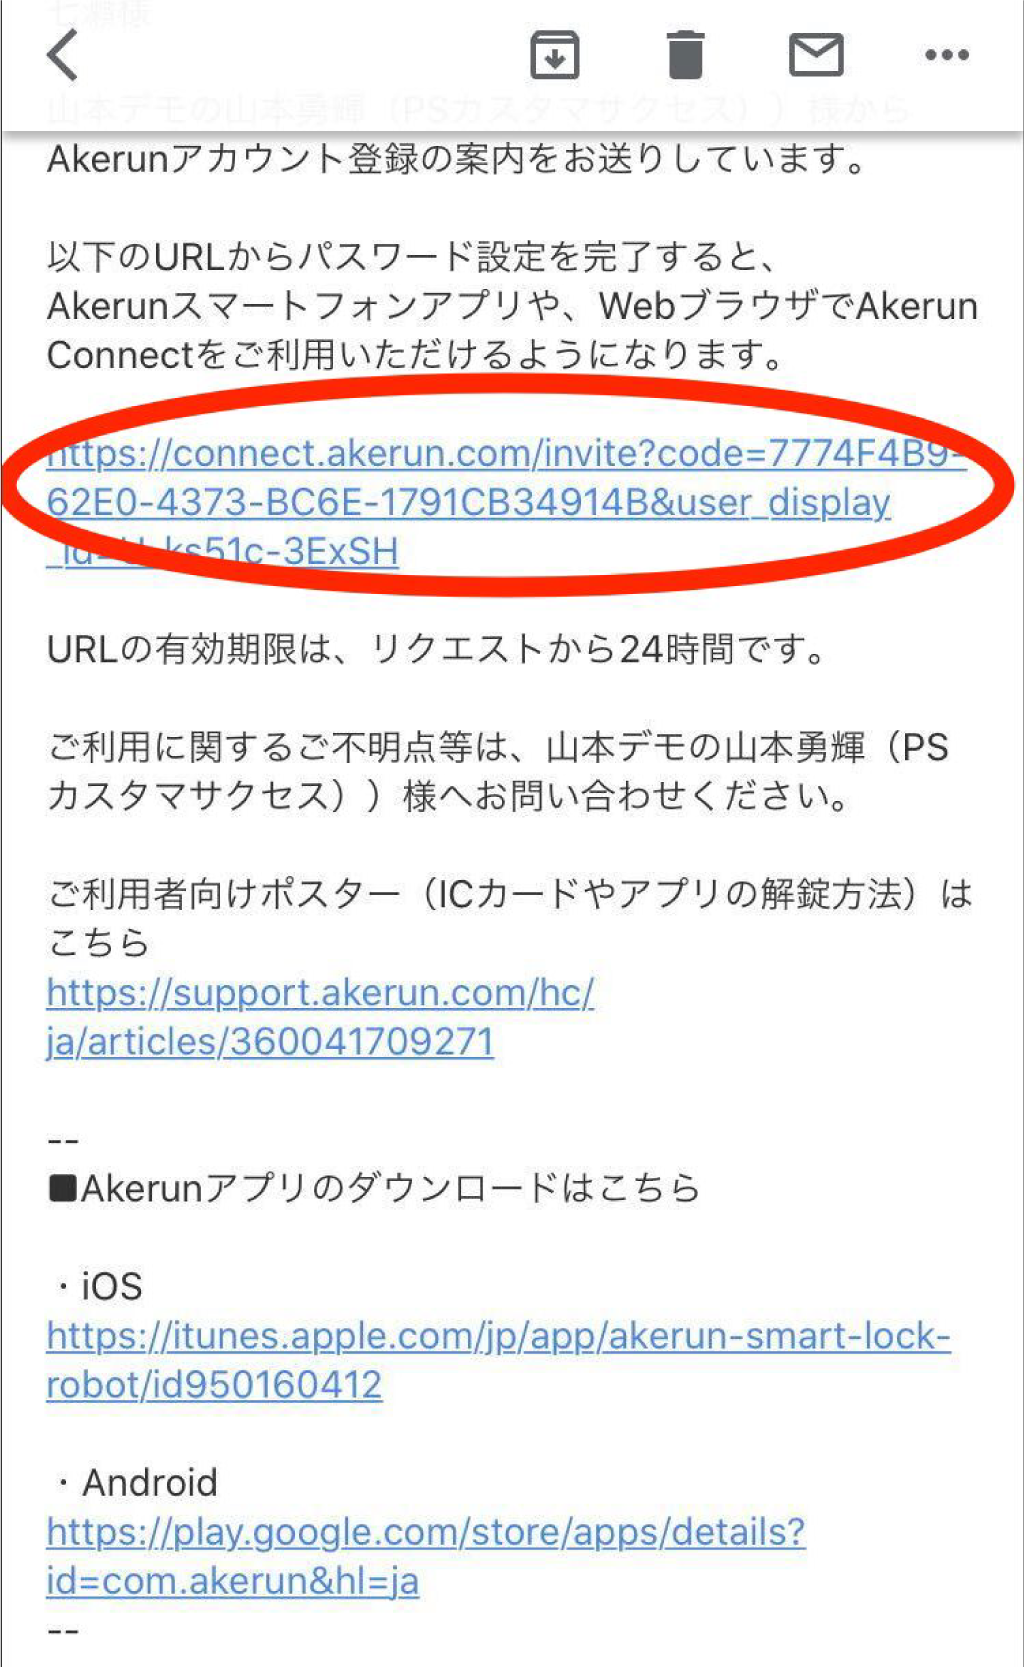 「Akerunアカウント設定のご案内」というタイトルにてsupport@photosynth.co.jpよりメールが届きます。